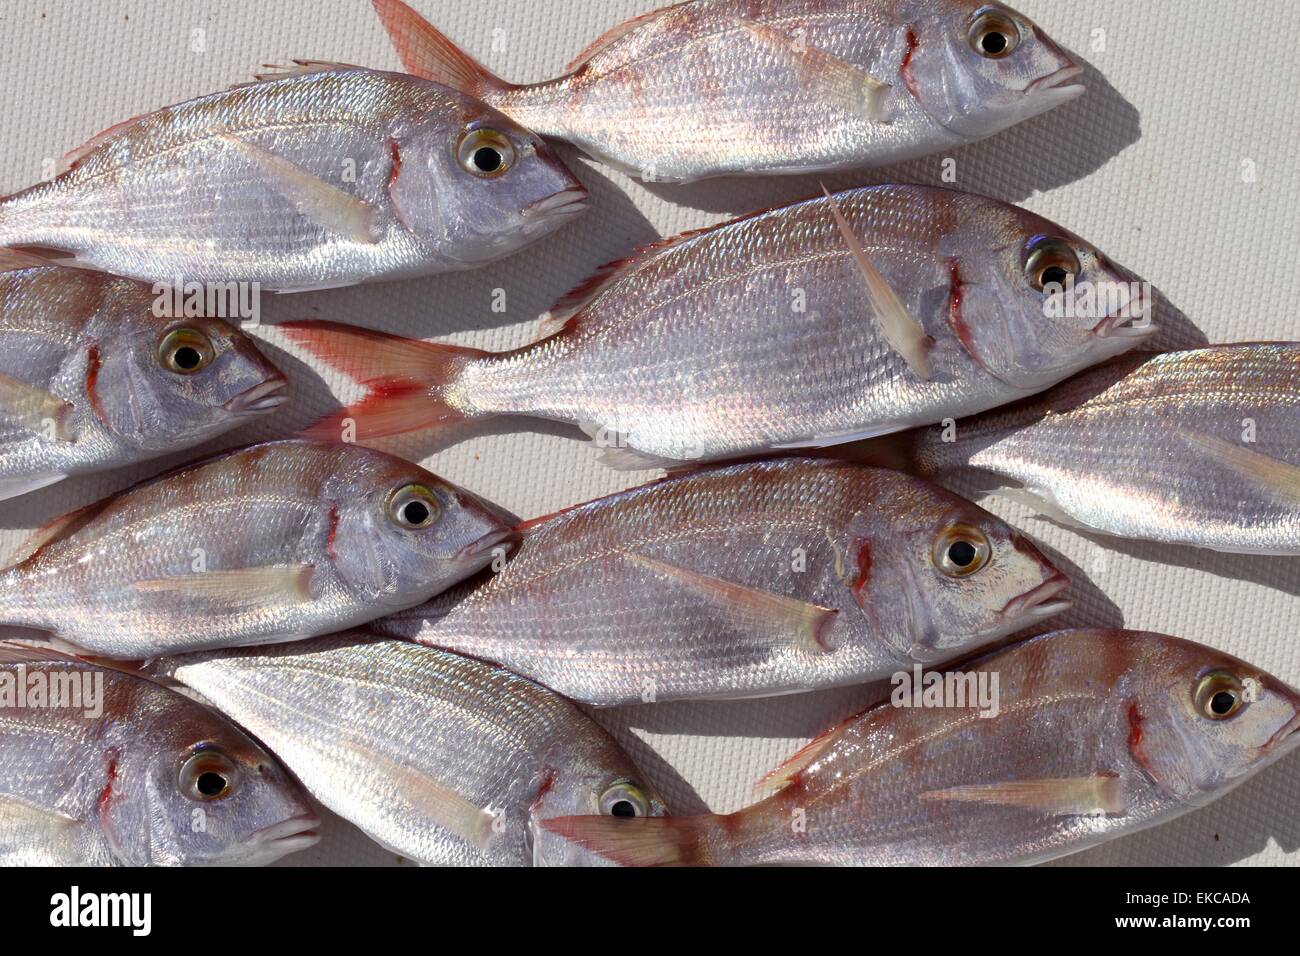 gemeinsamen Pandora Fisch Pagellus erythrinus Stockfotografie - Alamy